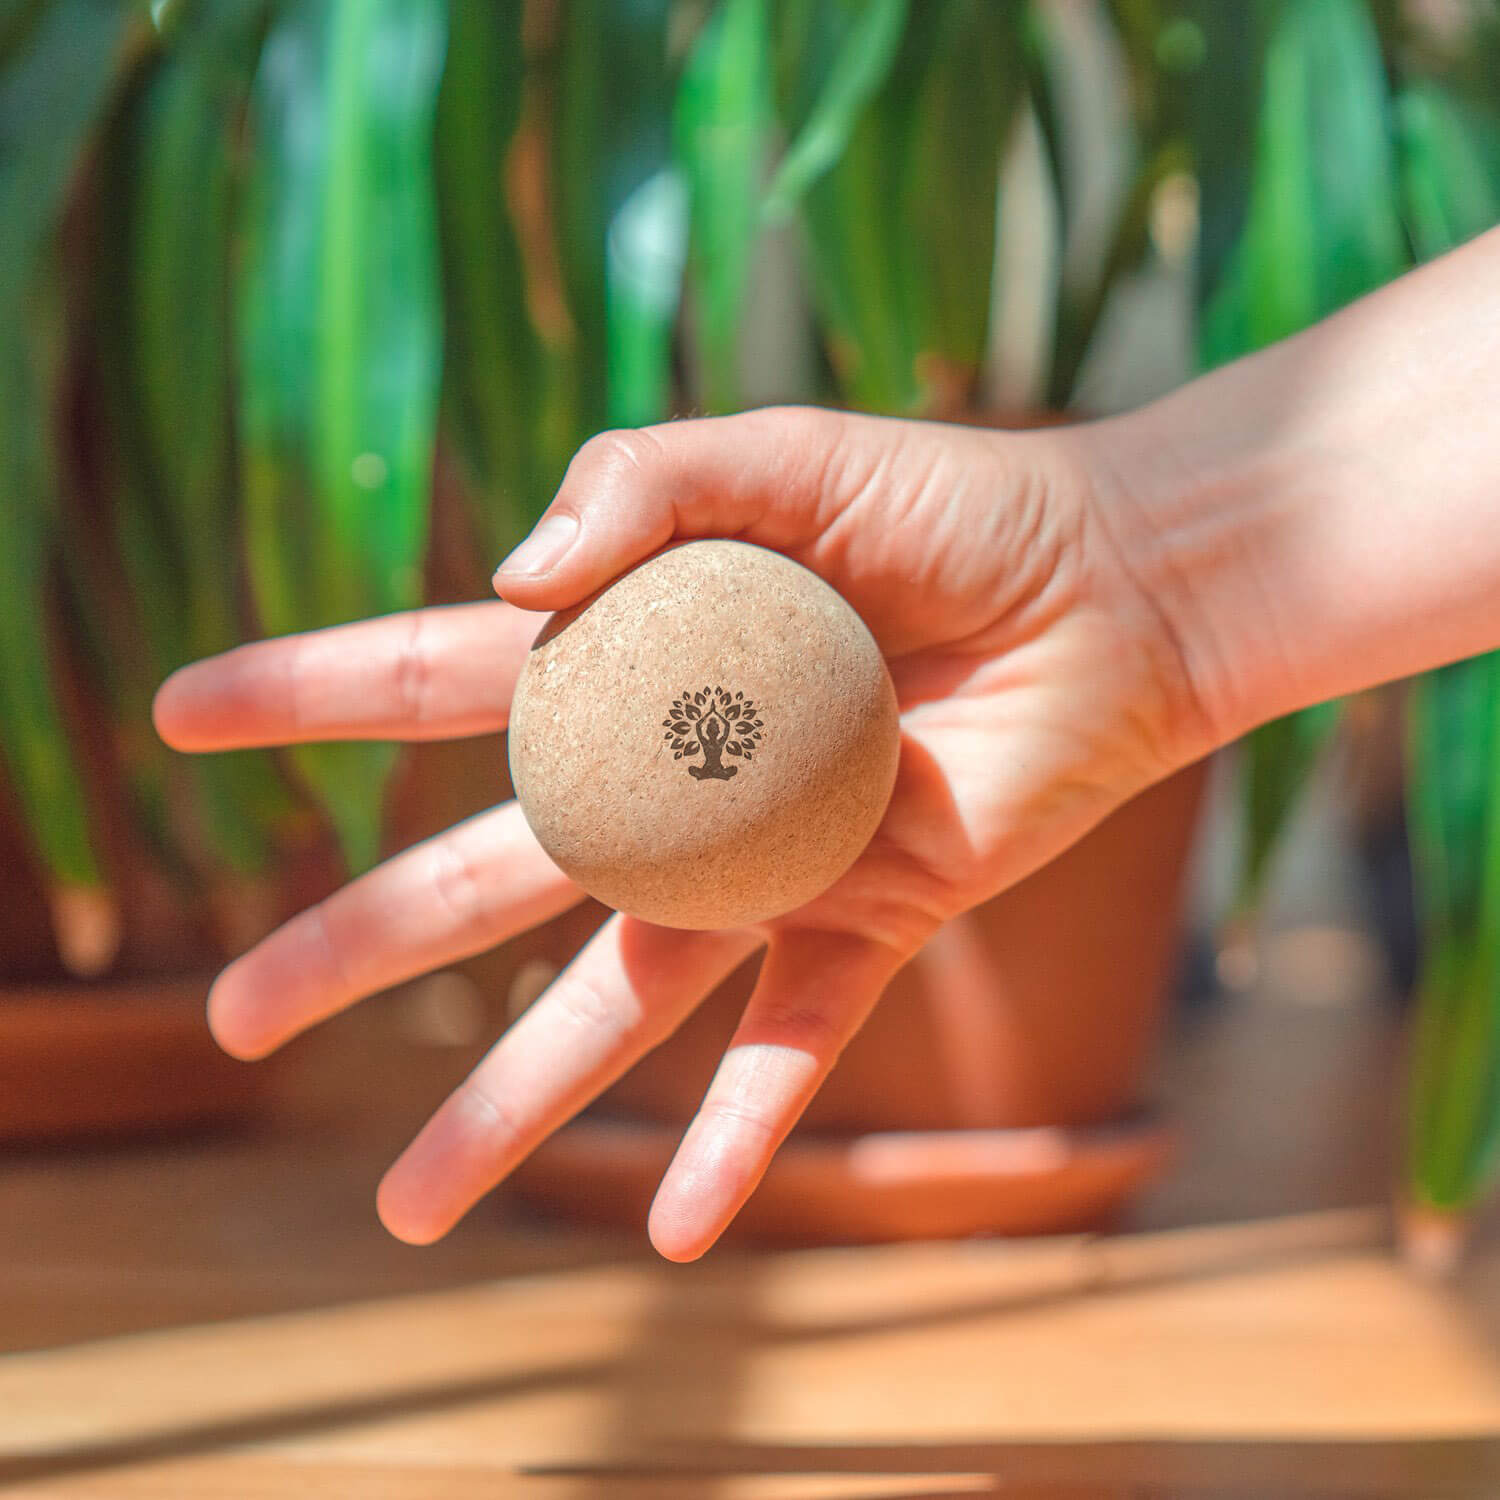 Cork massage ball in hand